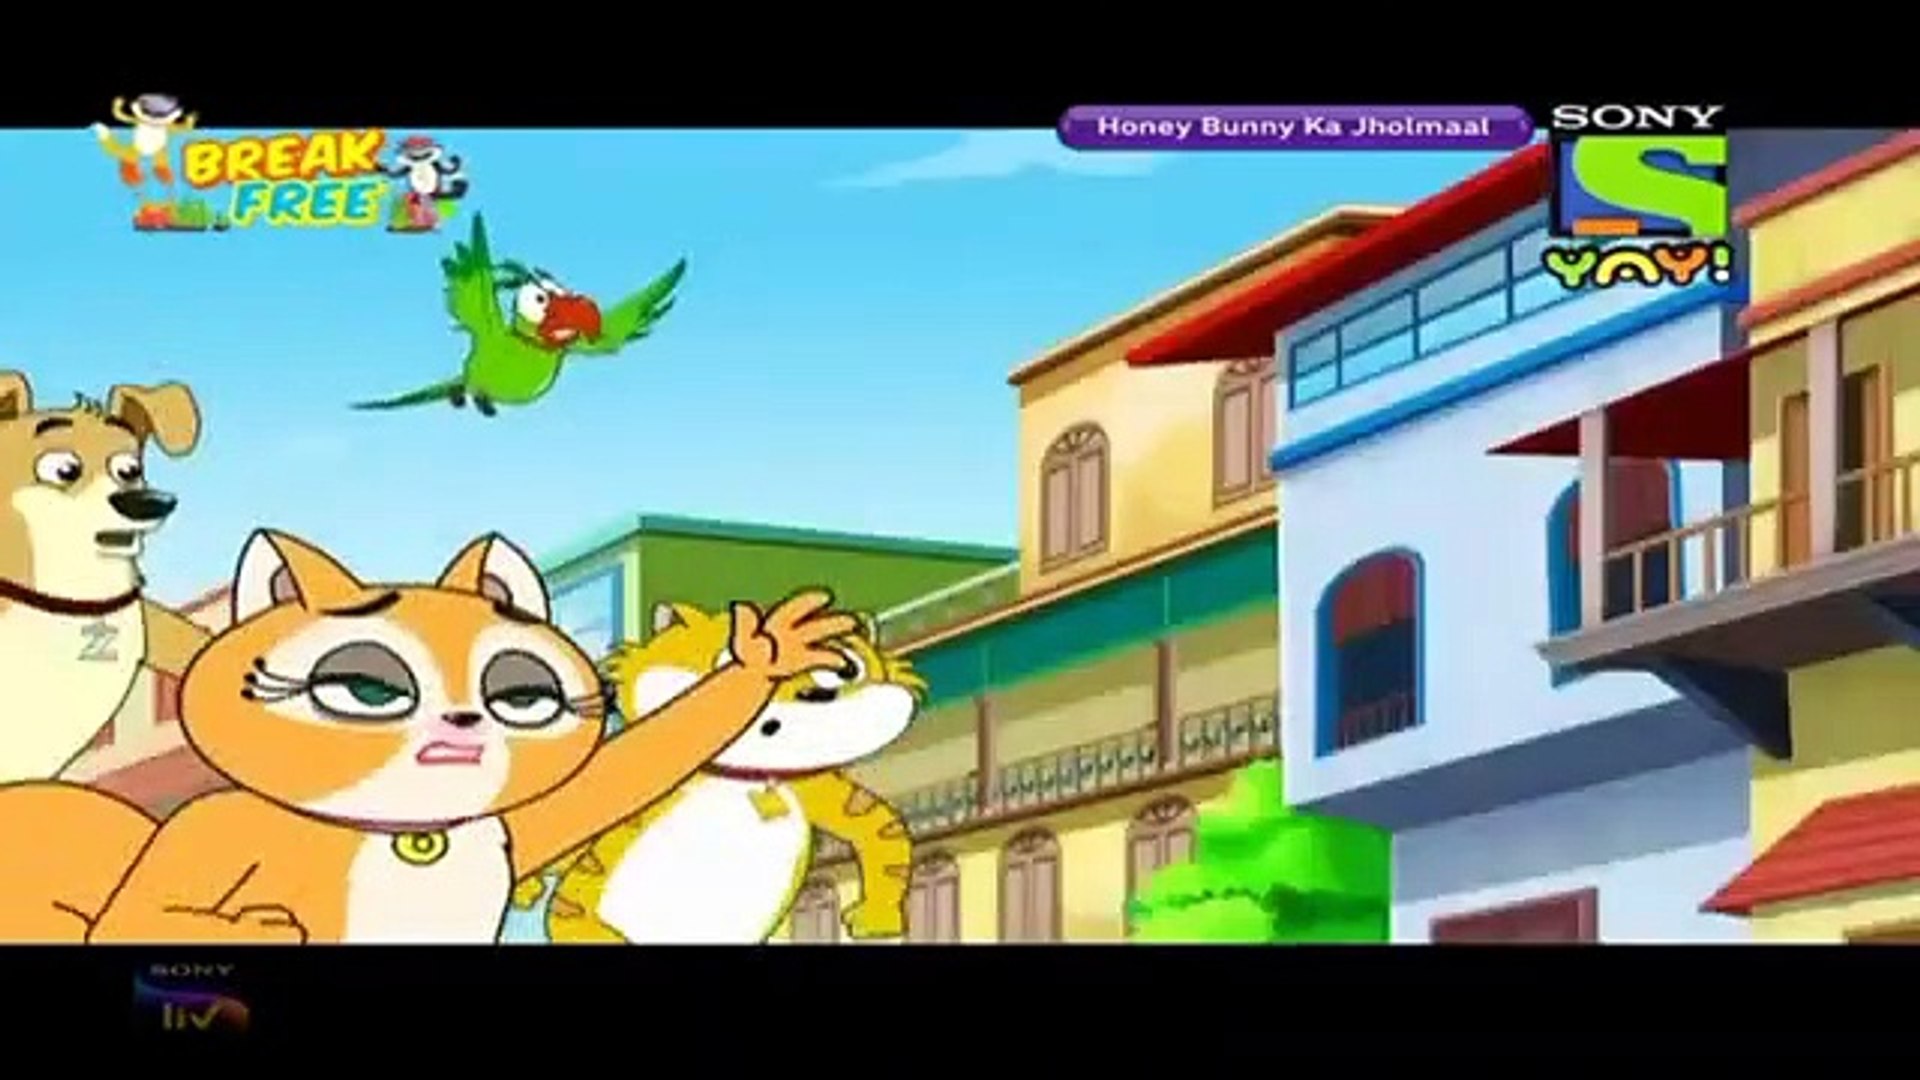 Honey Bunny Cartoon--Doll Ko Cycling Lesson-- Honey Bunny Ka Jholmaal--  Honey Bunny New Eppisode - video Dailymotion